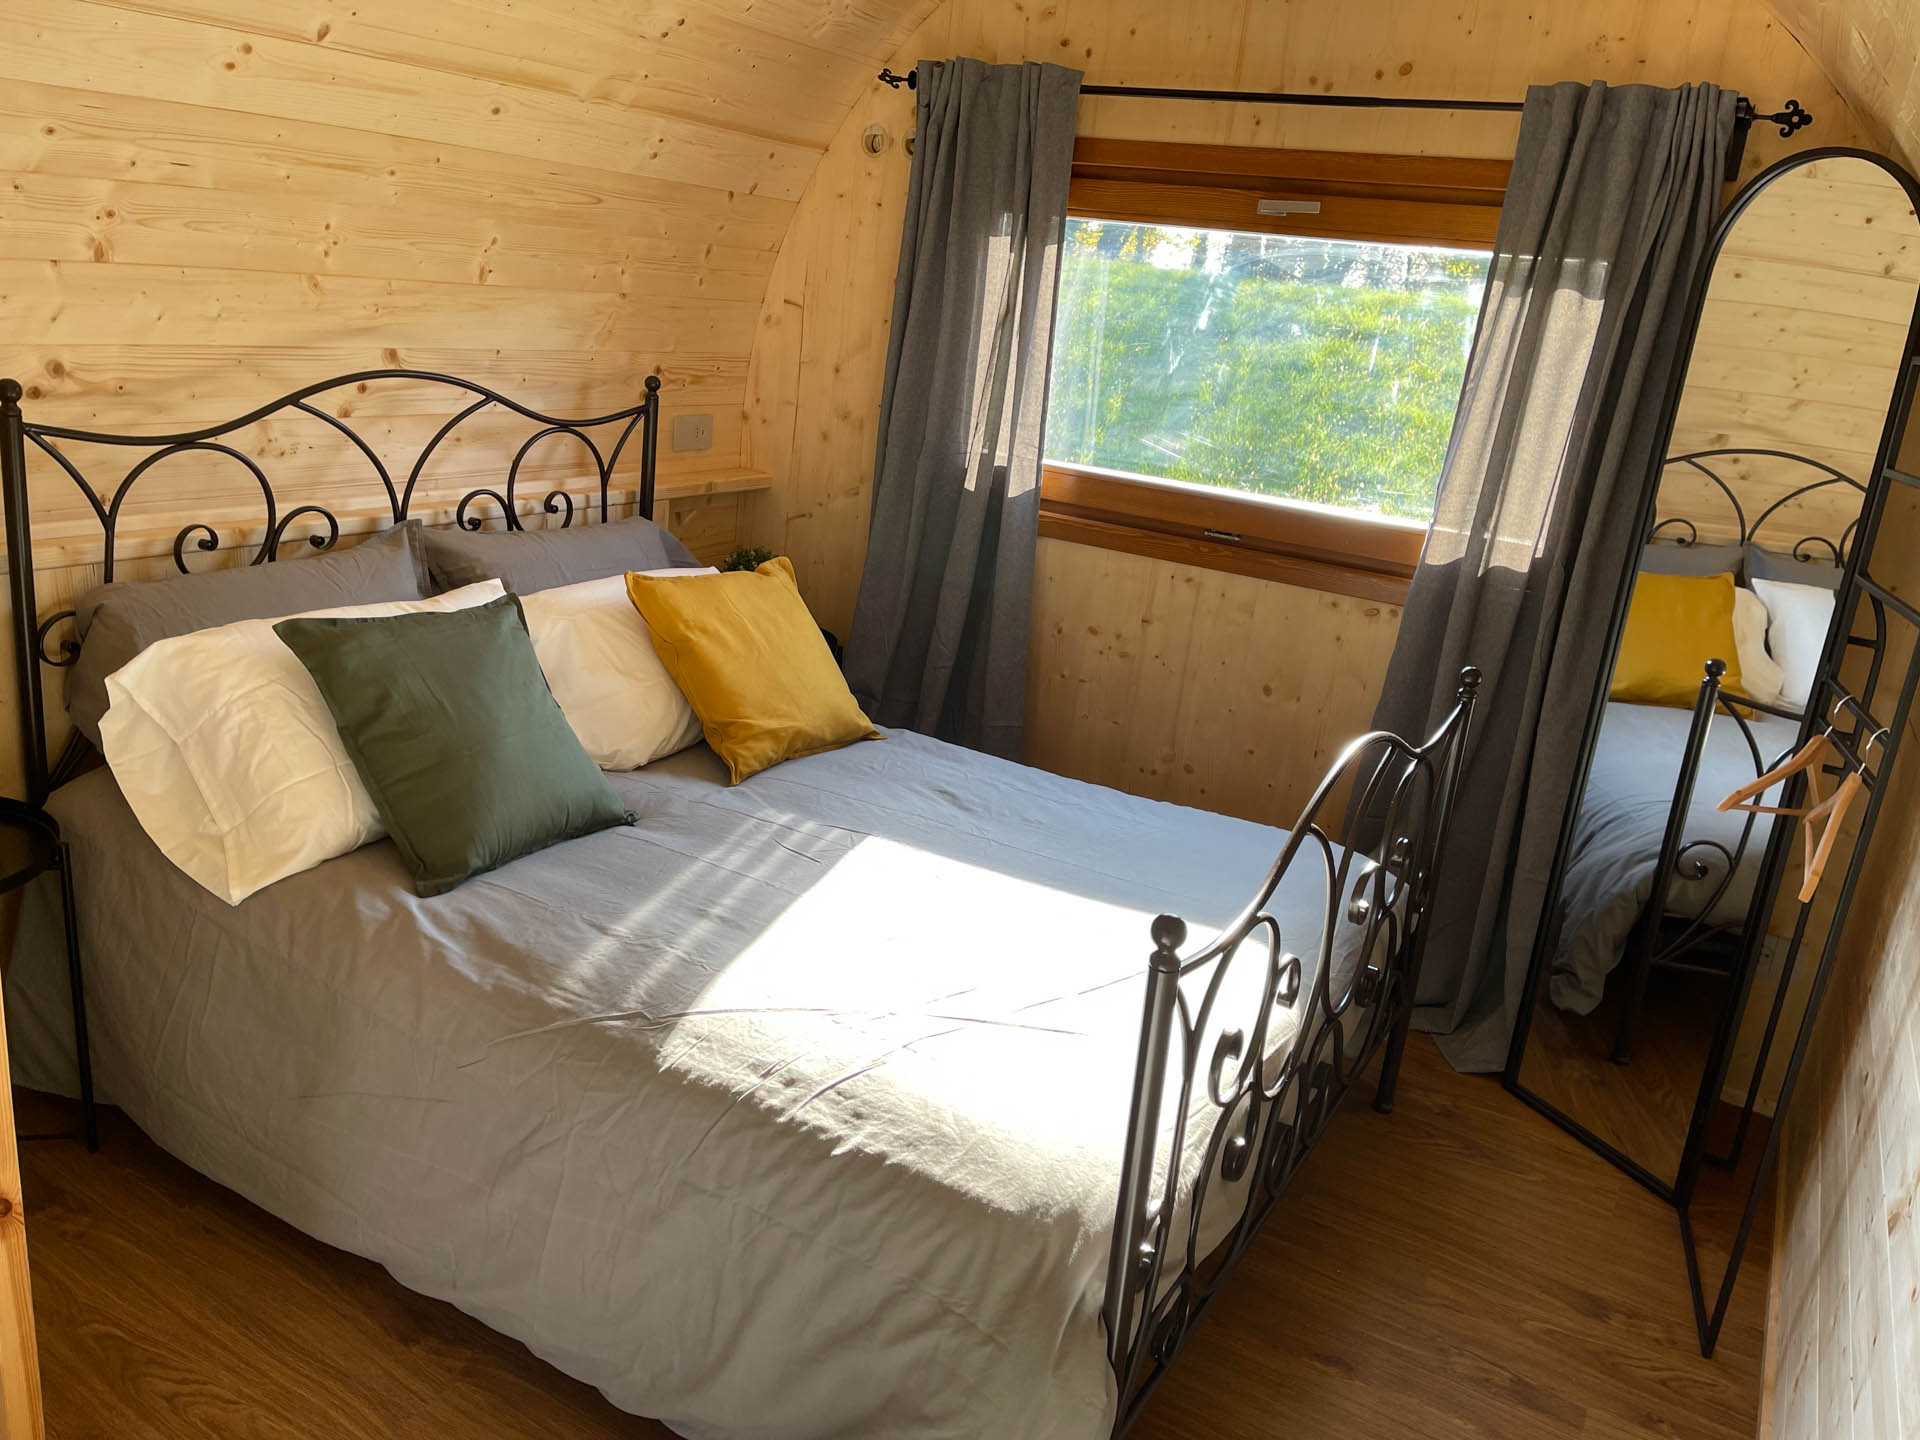 "Scegli la nostra esclusiva Camping Pod Suite come l'opzione ideale per le coppie in cerca di una fuga romantica nel vostro campeggio. Con ogni comfort pensato per un soggiorno perfetto, regalerete ai vostri ospiti un'esperienza indimenticabile nel cuore della natura."